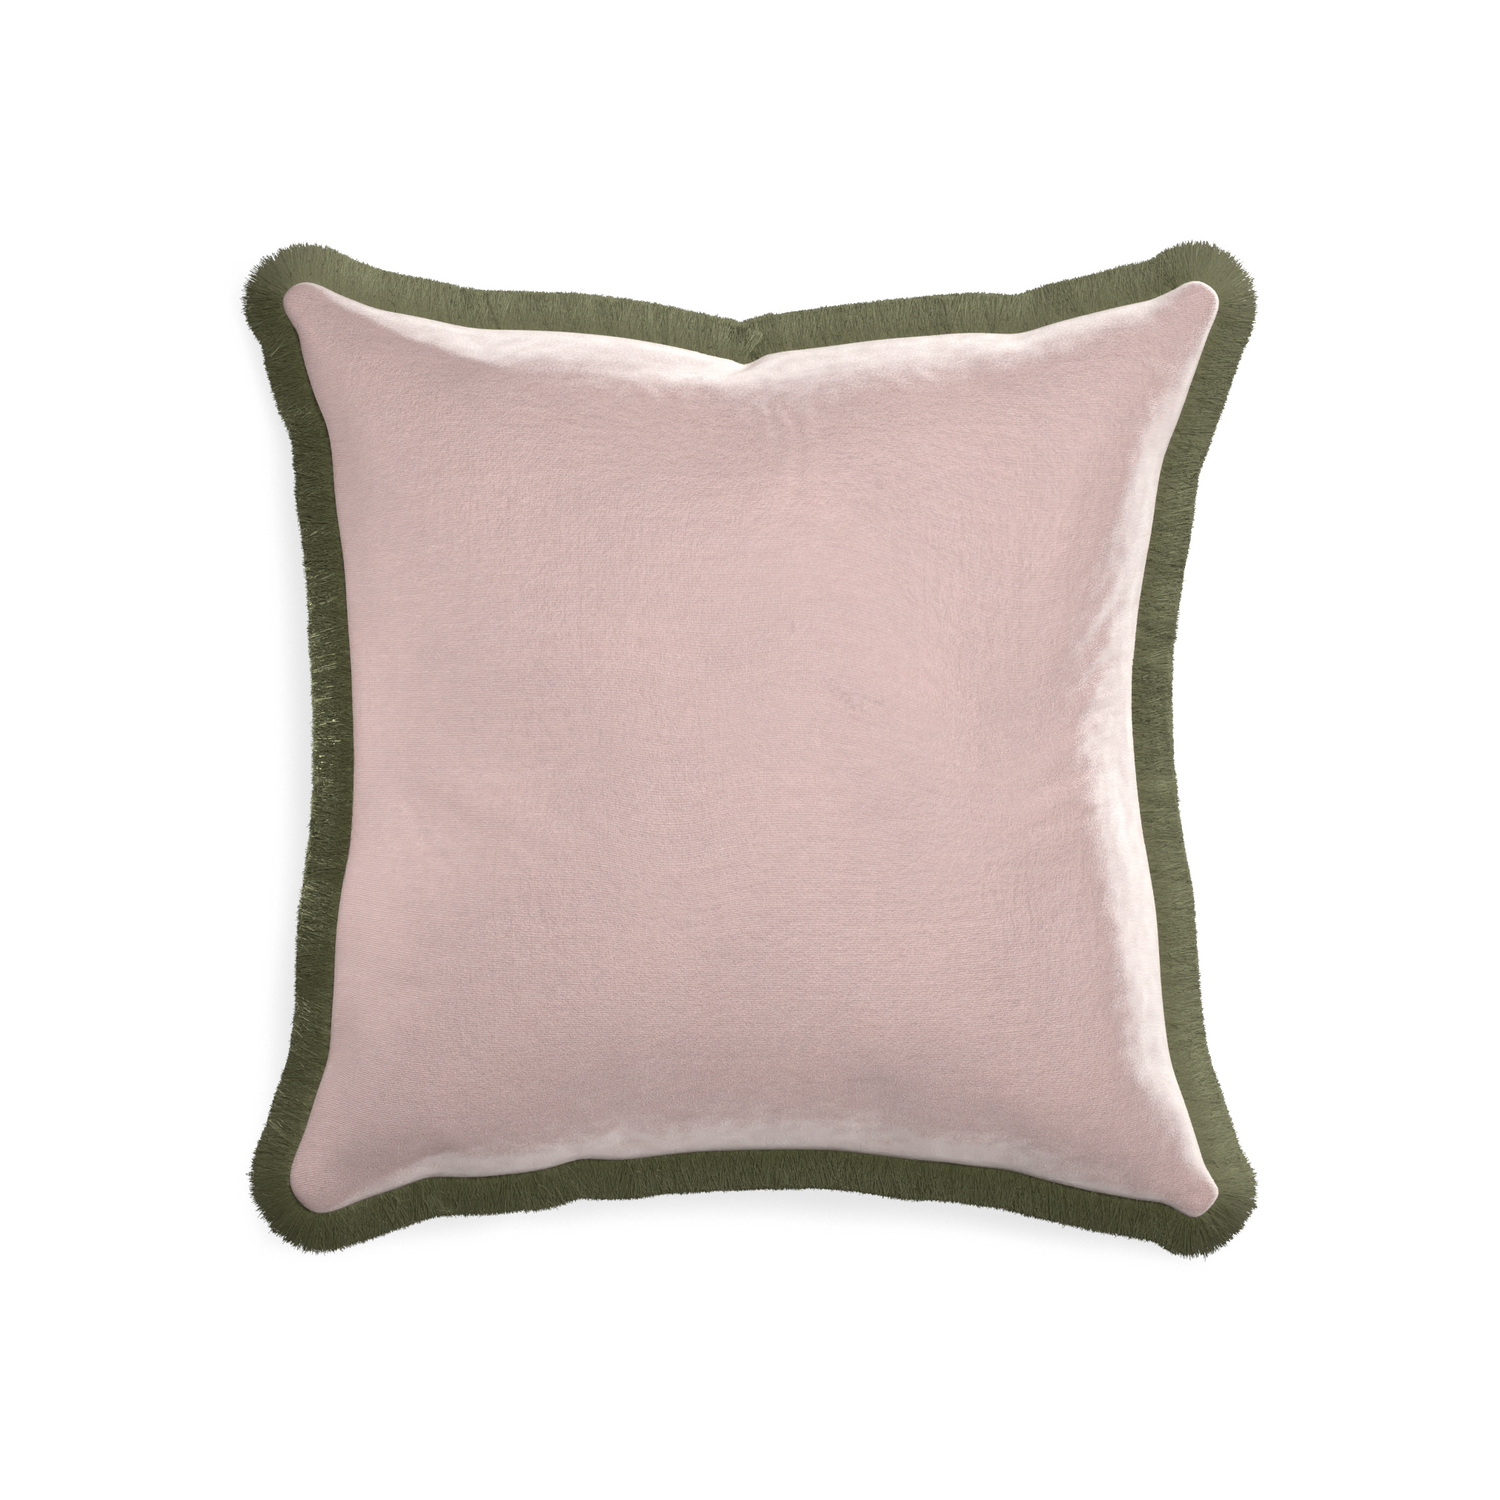 20-square rose velvet custom pillow with sage fringe on white background